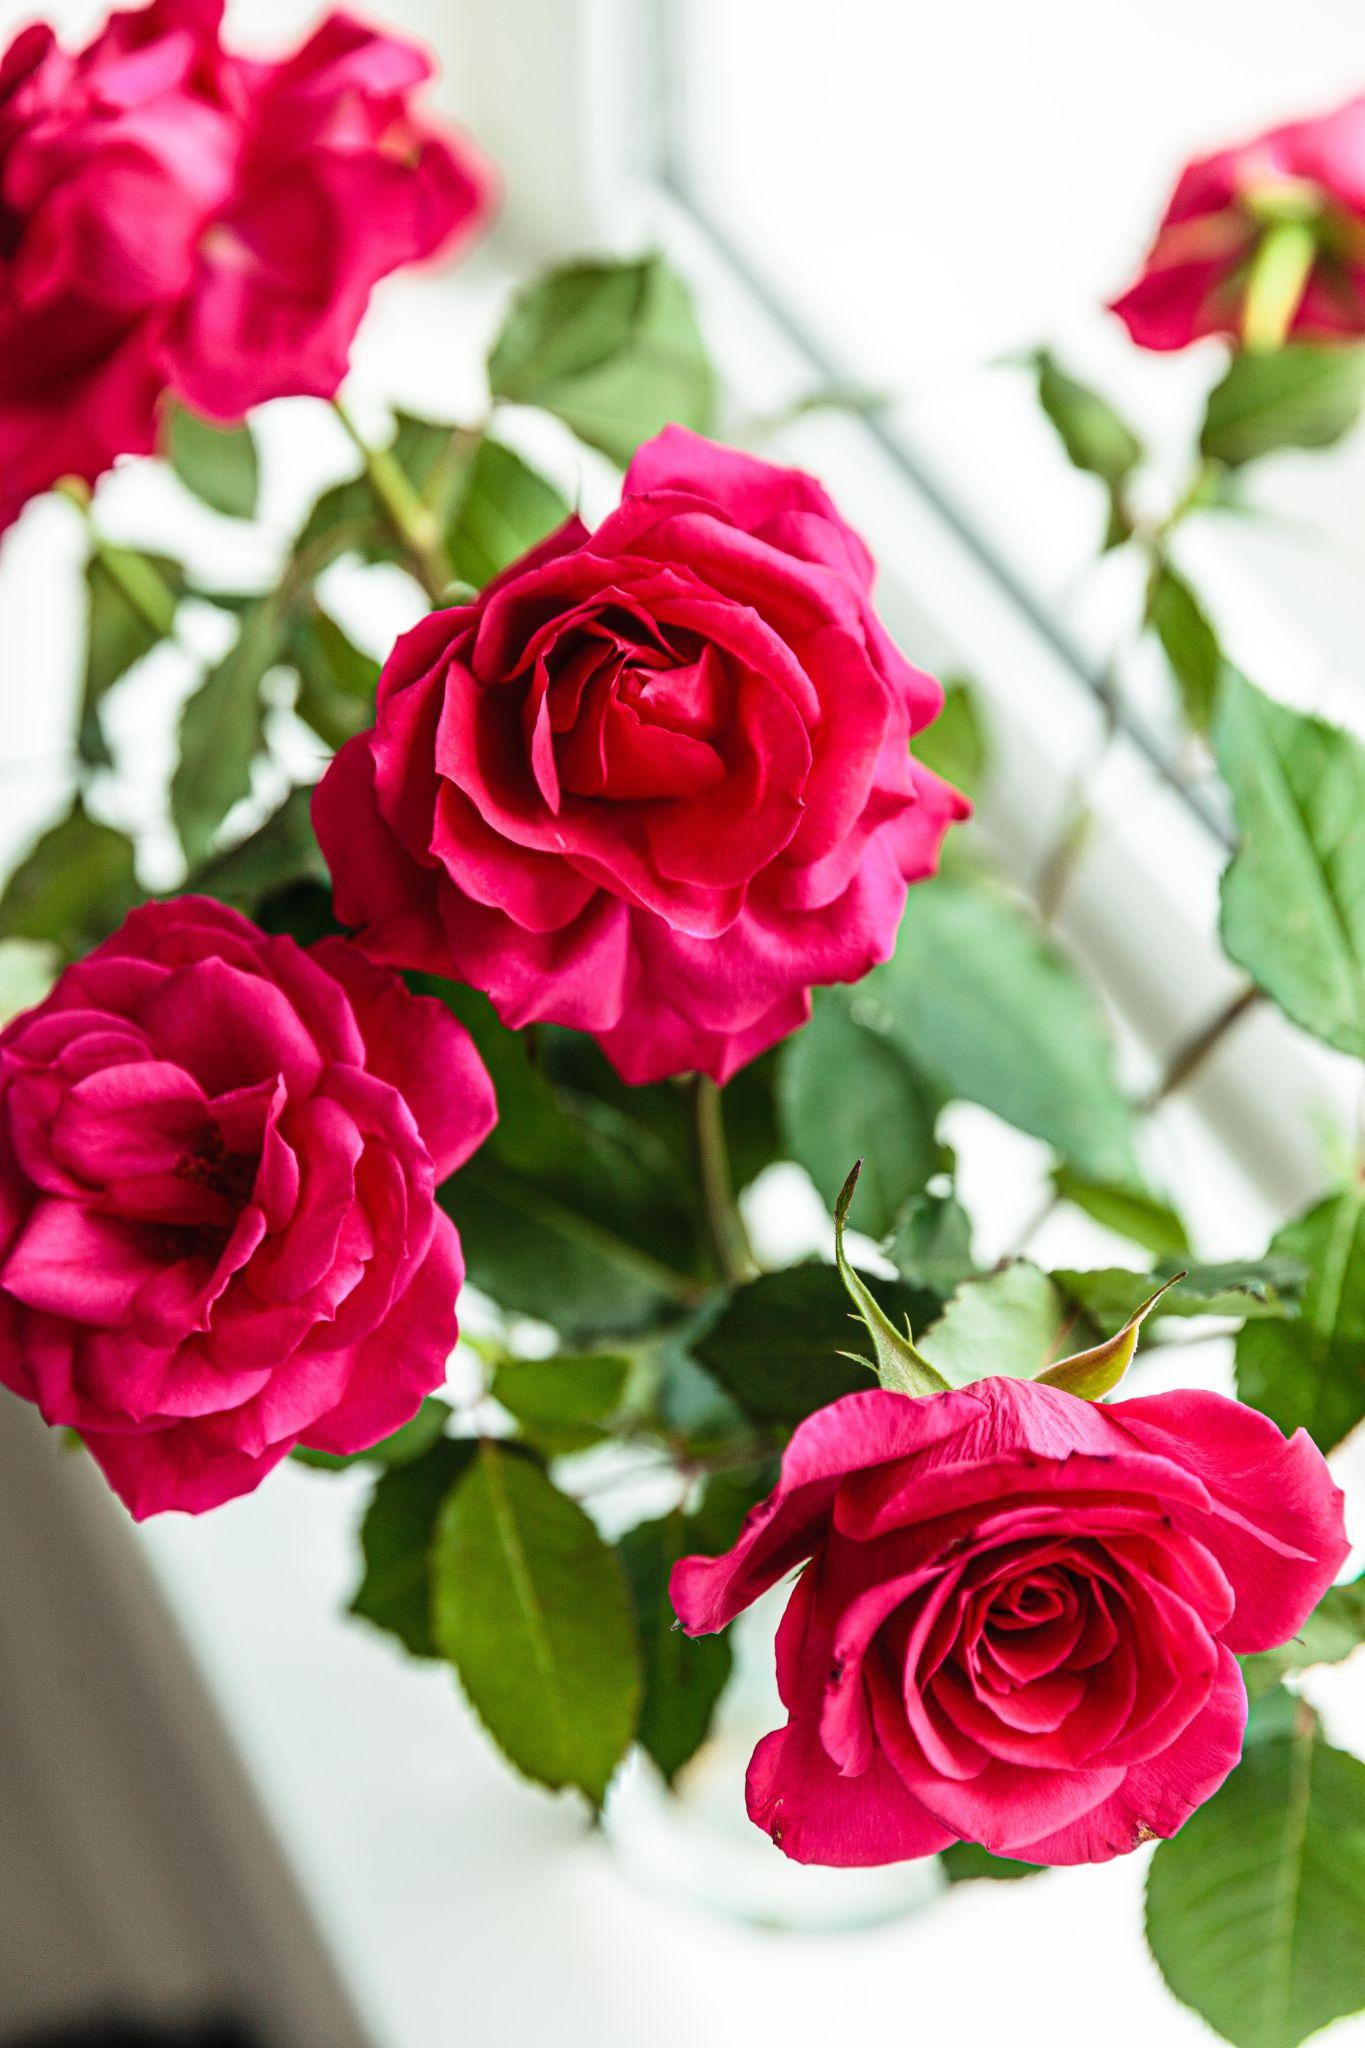 Những đóa hoa hồng tươi đẹp không chỉ đẹp mắt mà còn chứa đựng ý nghĩa sâu sắc về tình yêu, sự ngưỡng mộ và sự tôn trọng. Tùy thuộc vào màu sắc, từng loại hoa hồng còn mang một thông điệp riêng biệt. Sự kết hợp đa dạng của chúng cũng mang đến vẻ đẹp tuyệt vời và độc đáo. Hãy chiêm ngưỡng những hình ảnh đẹp của các loài hoa hồng để cảm nhận sự độc đáo của chúng.